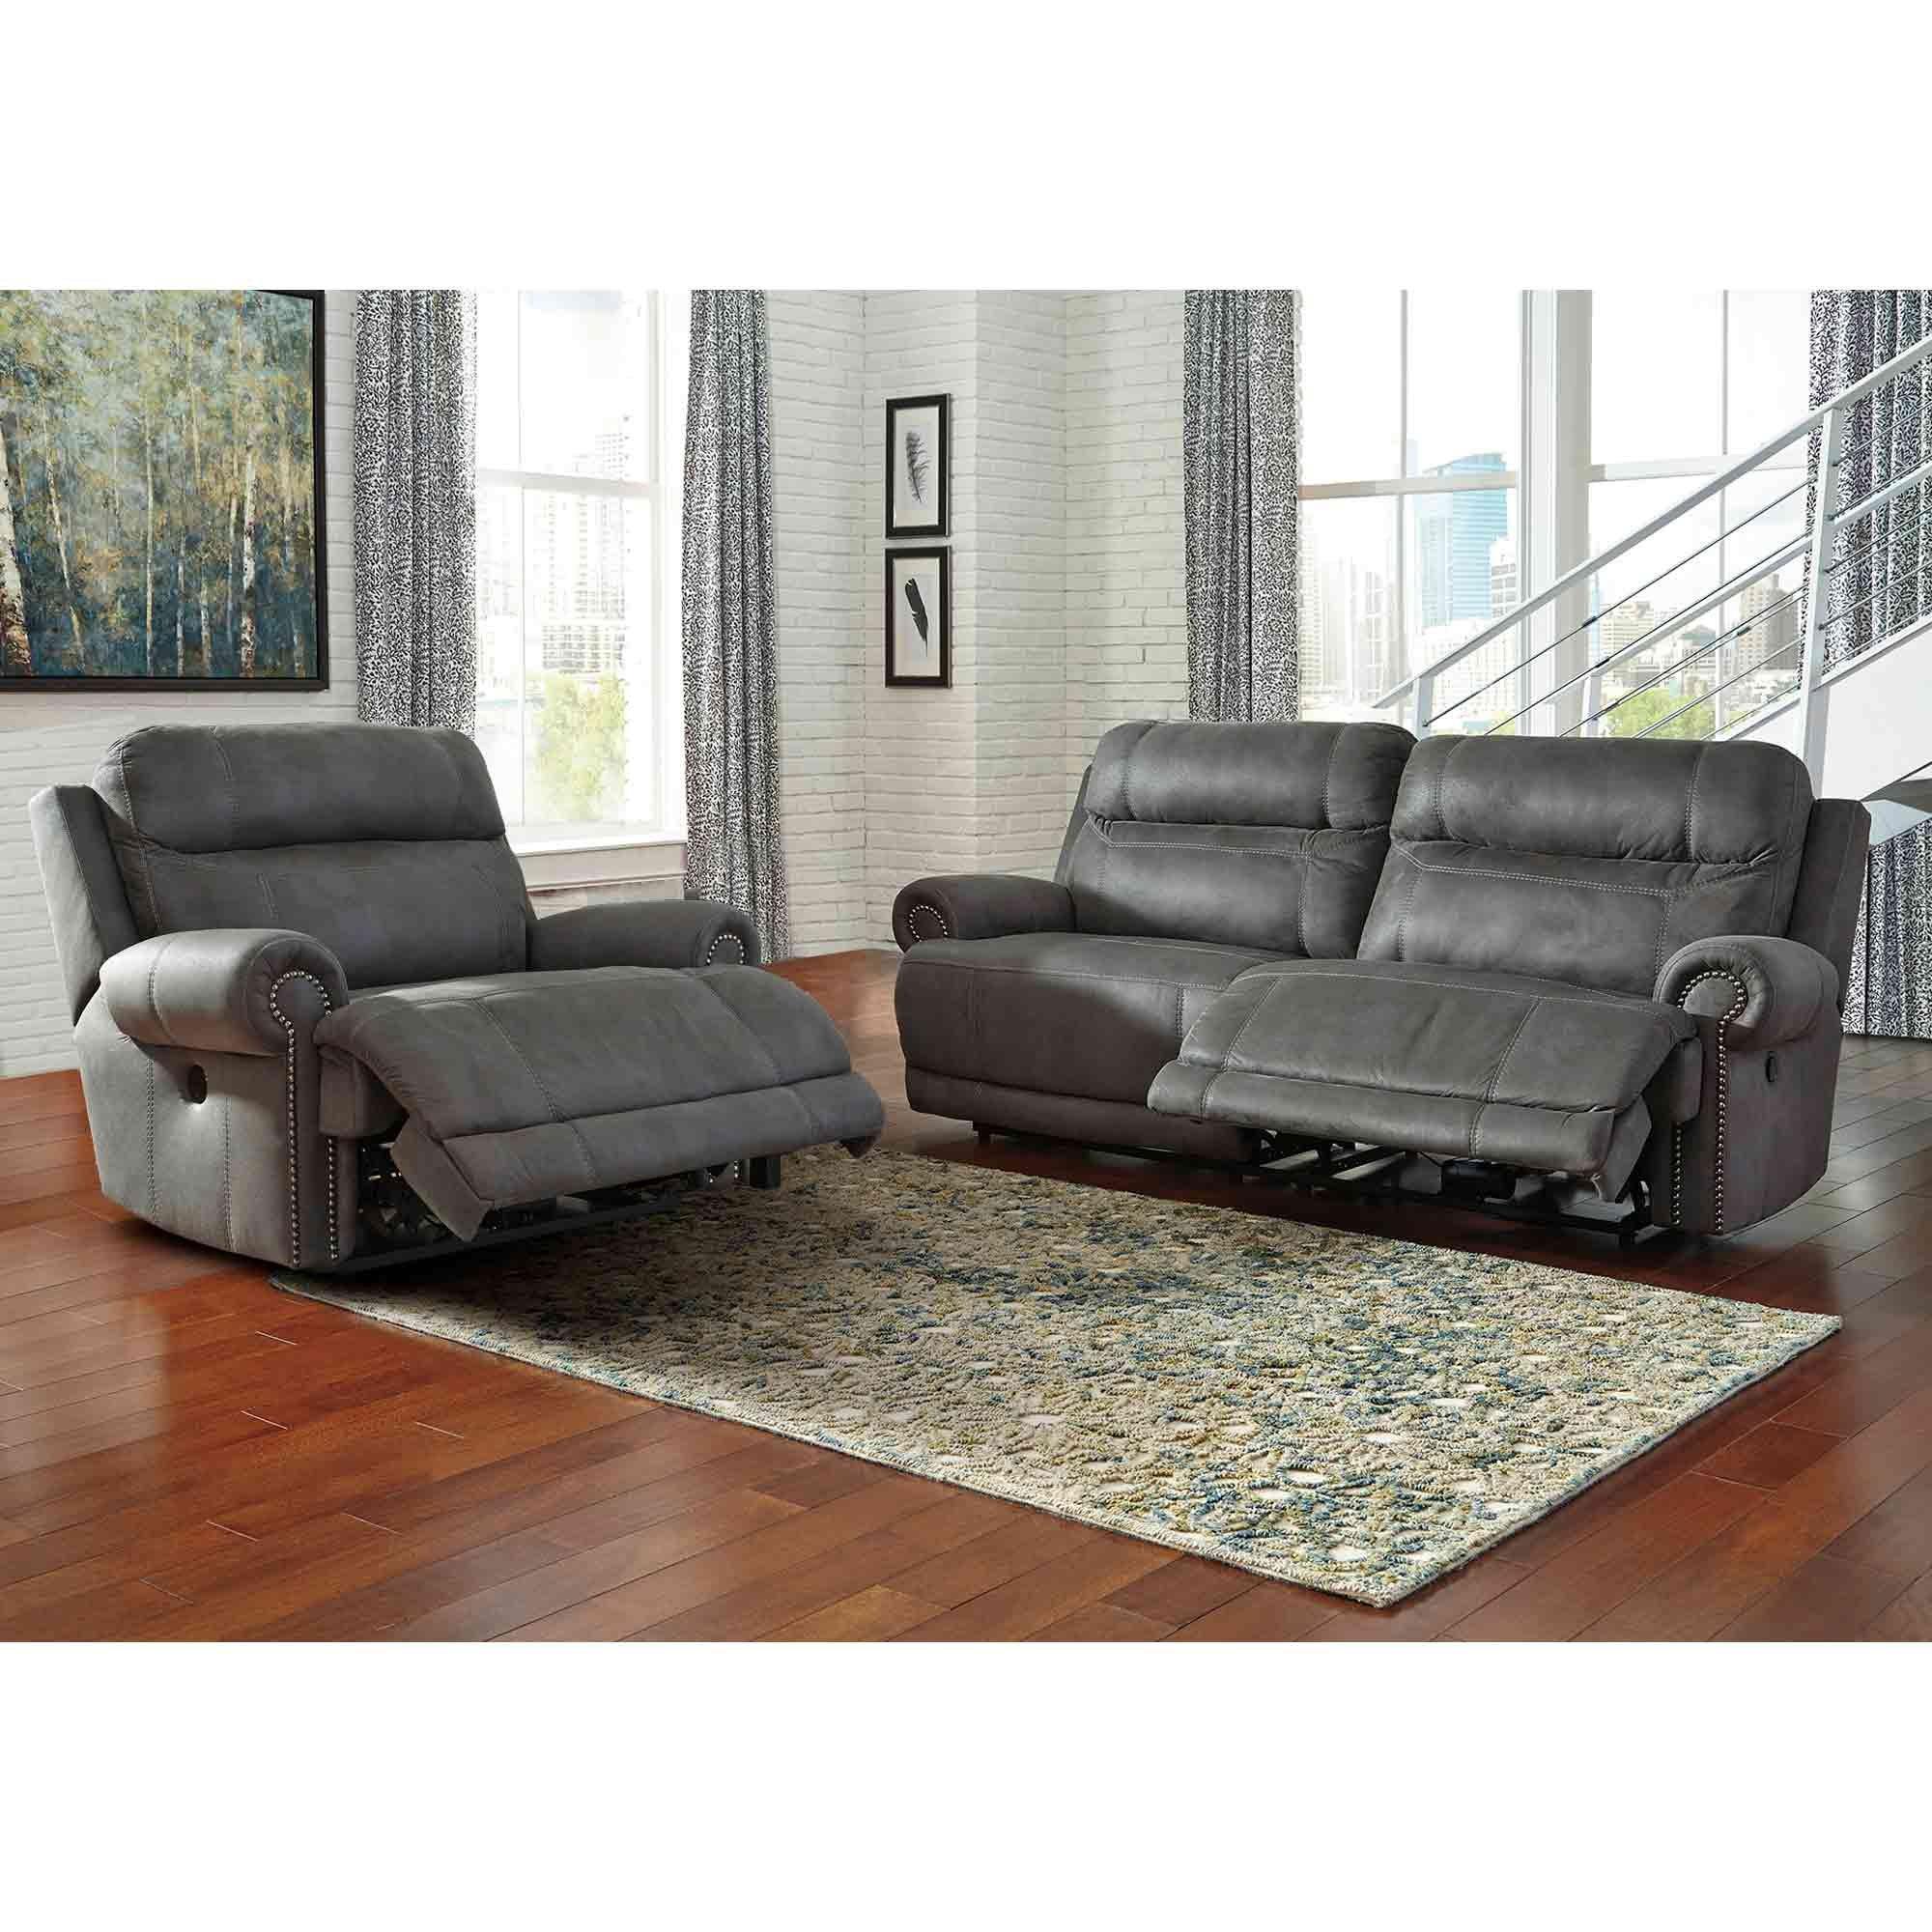 Juego de sofá reclinable de cuero, juego de muebles de sala de estar, sofá  reclinable manual y sofá biplaza con silla reclinable para sala de estar